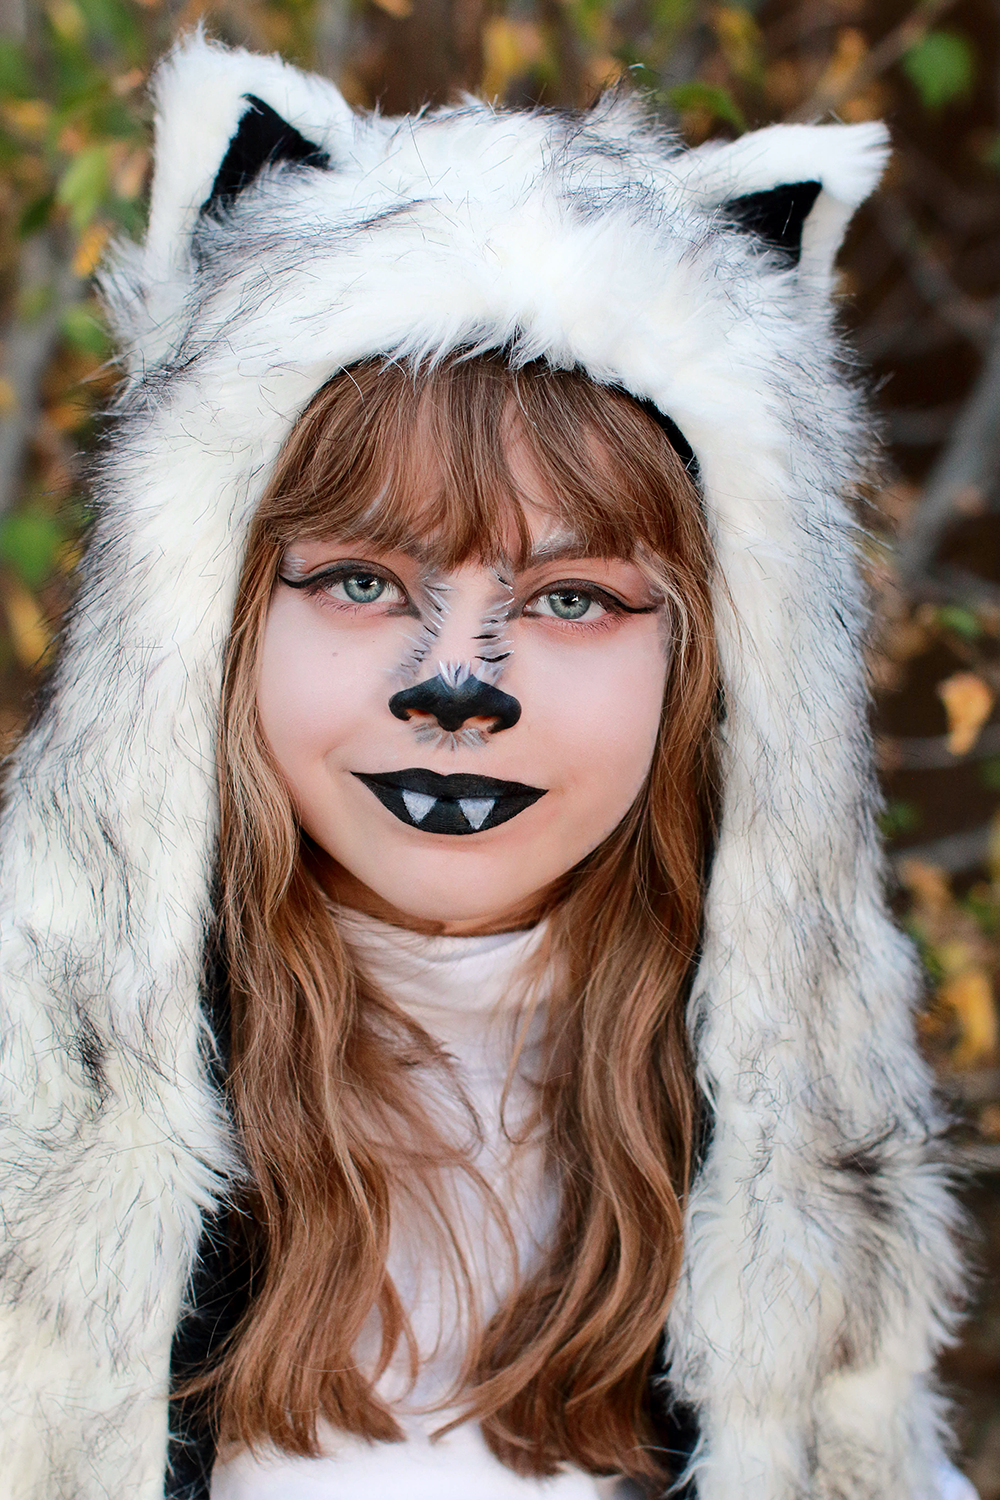 The Arbitrary Fox : Halloween 2016